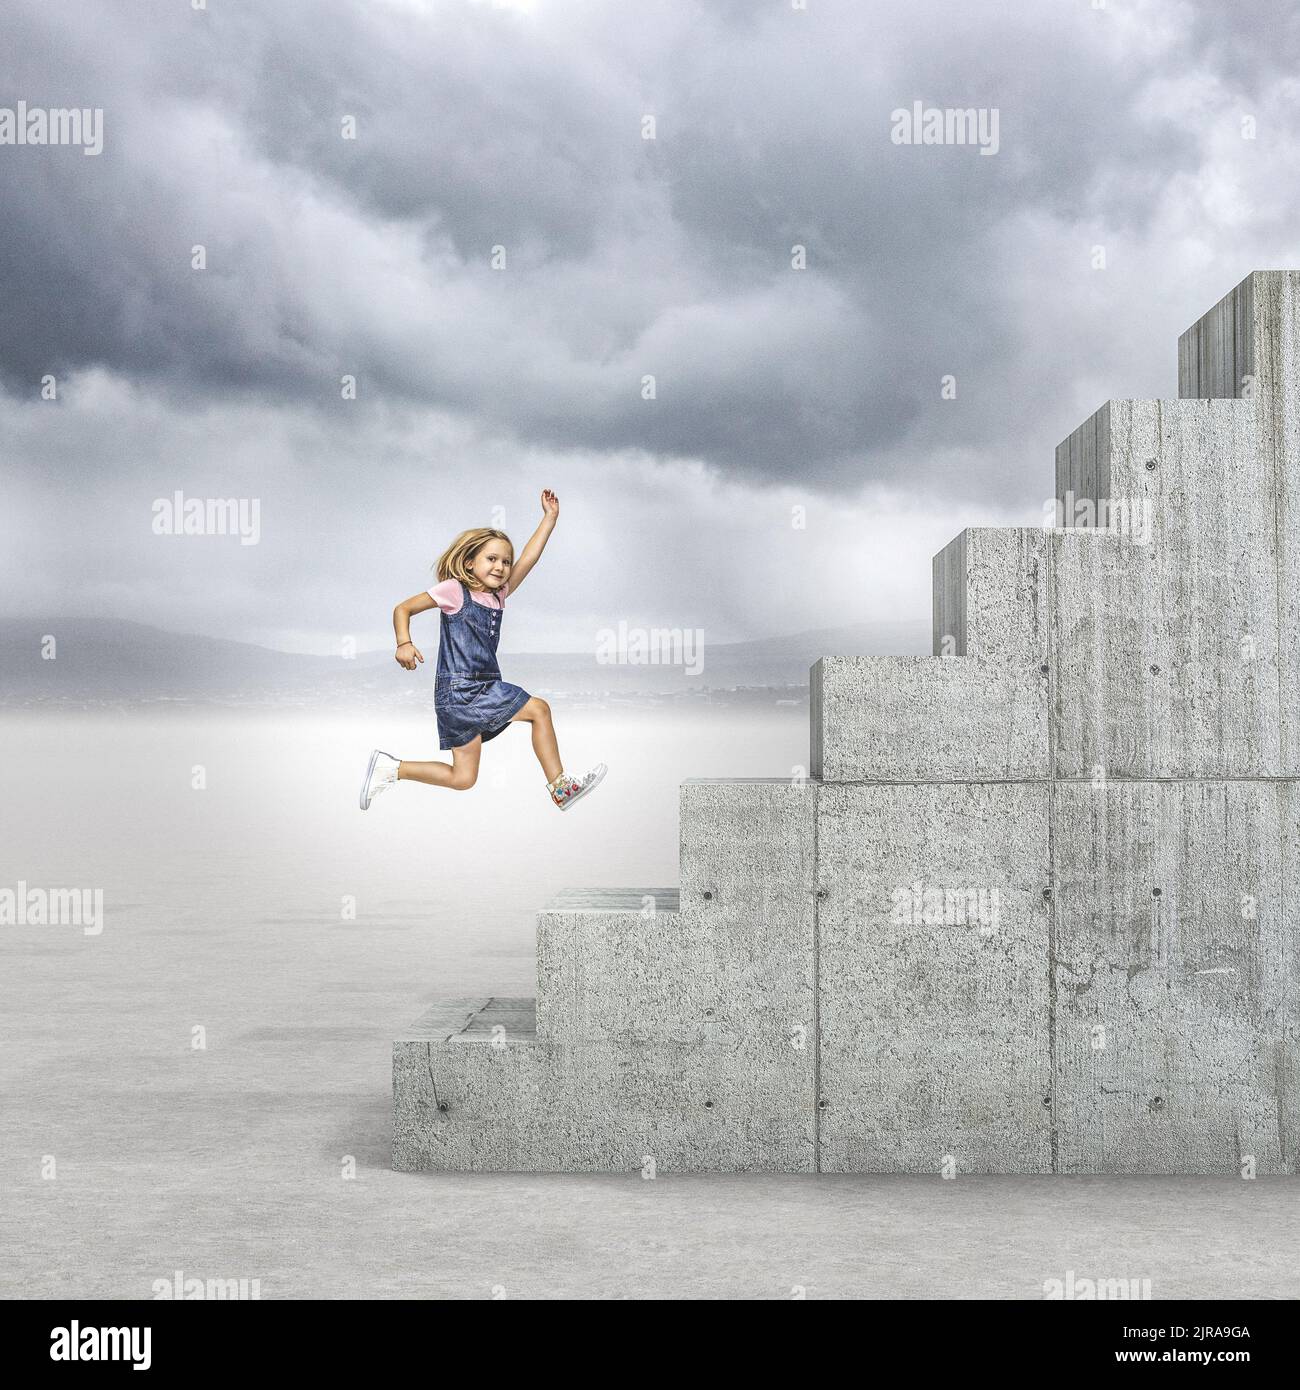 girl runs to climb a long concrete staircase Stock Photo